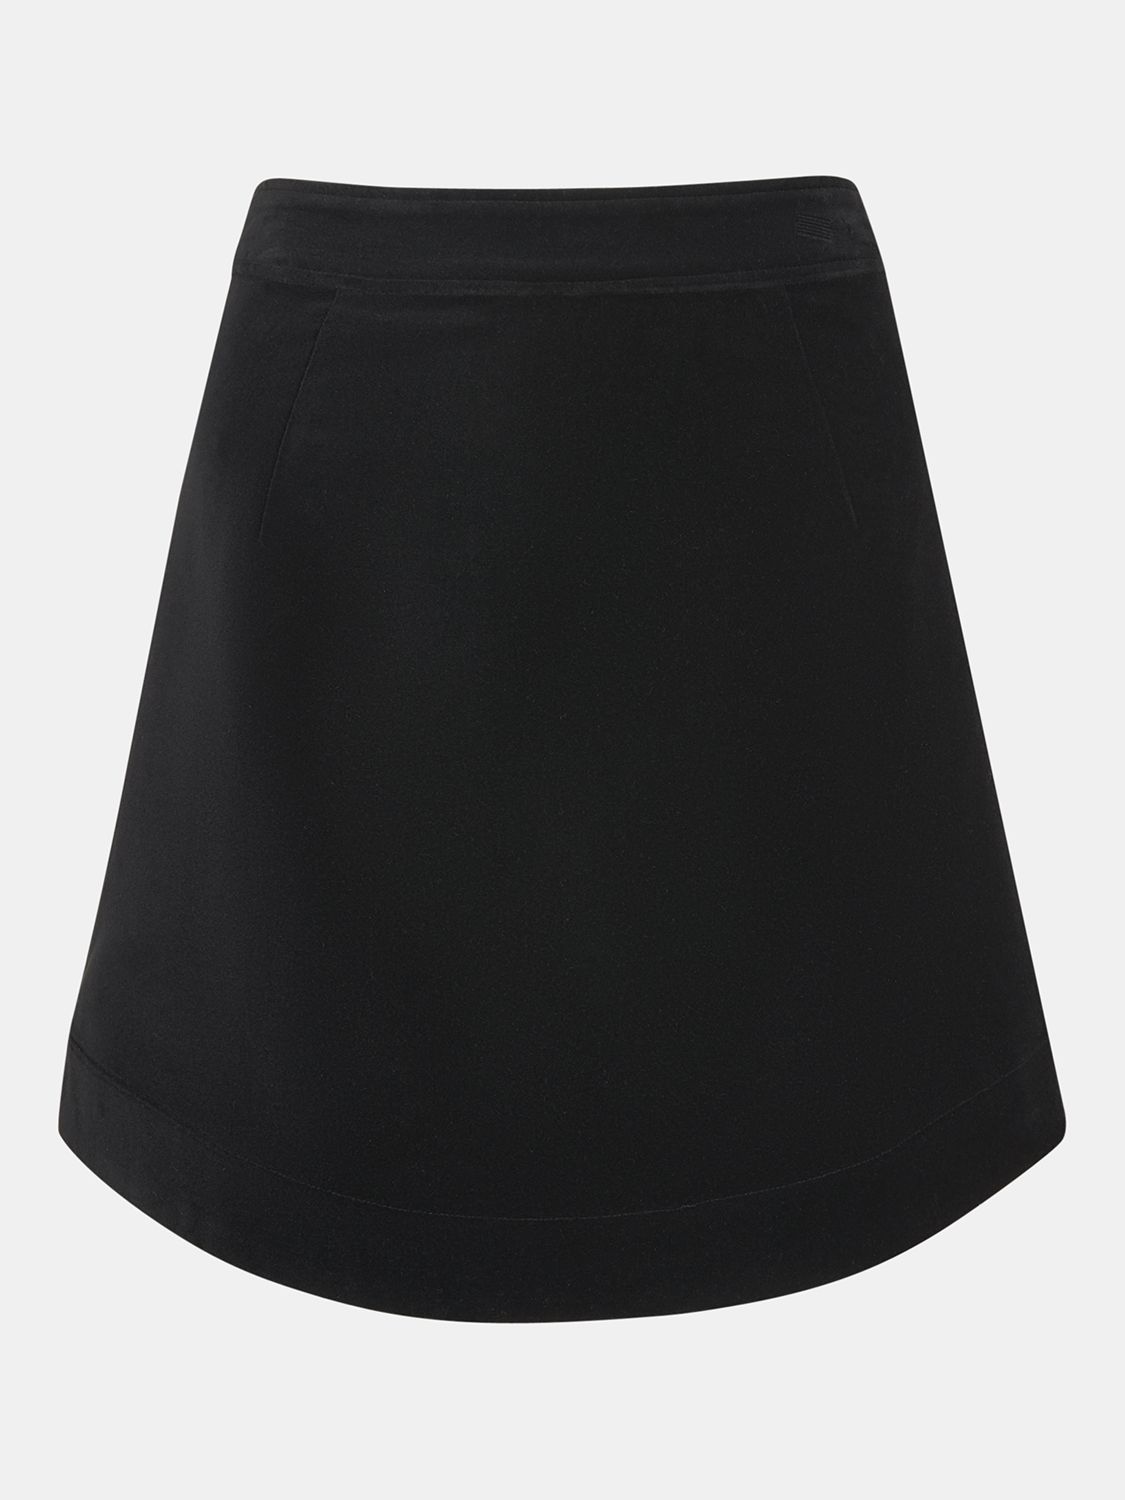 Whistles Petite Velvet Curved Hem Mini Skirt, Black at John Lewis ...